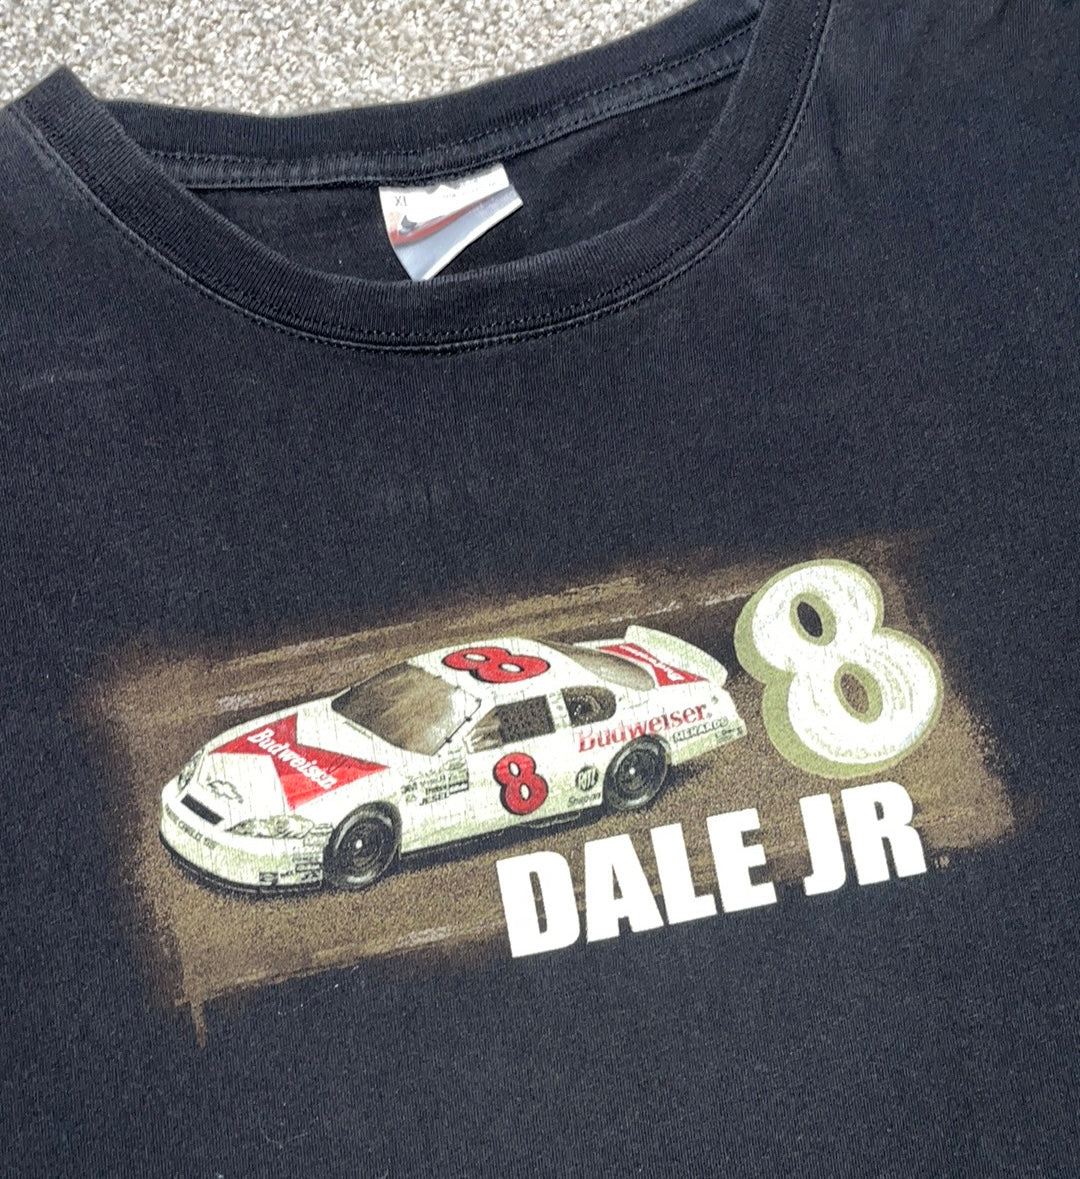 Vintage Dale Jr Nascar Racing Tee - XL